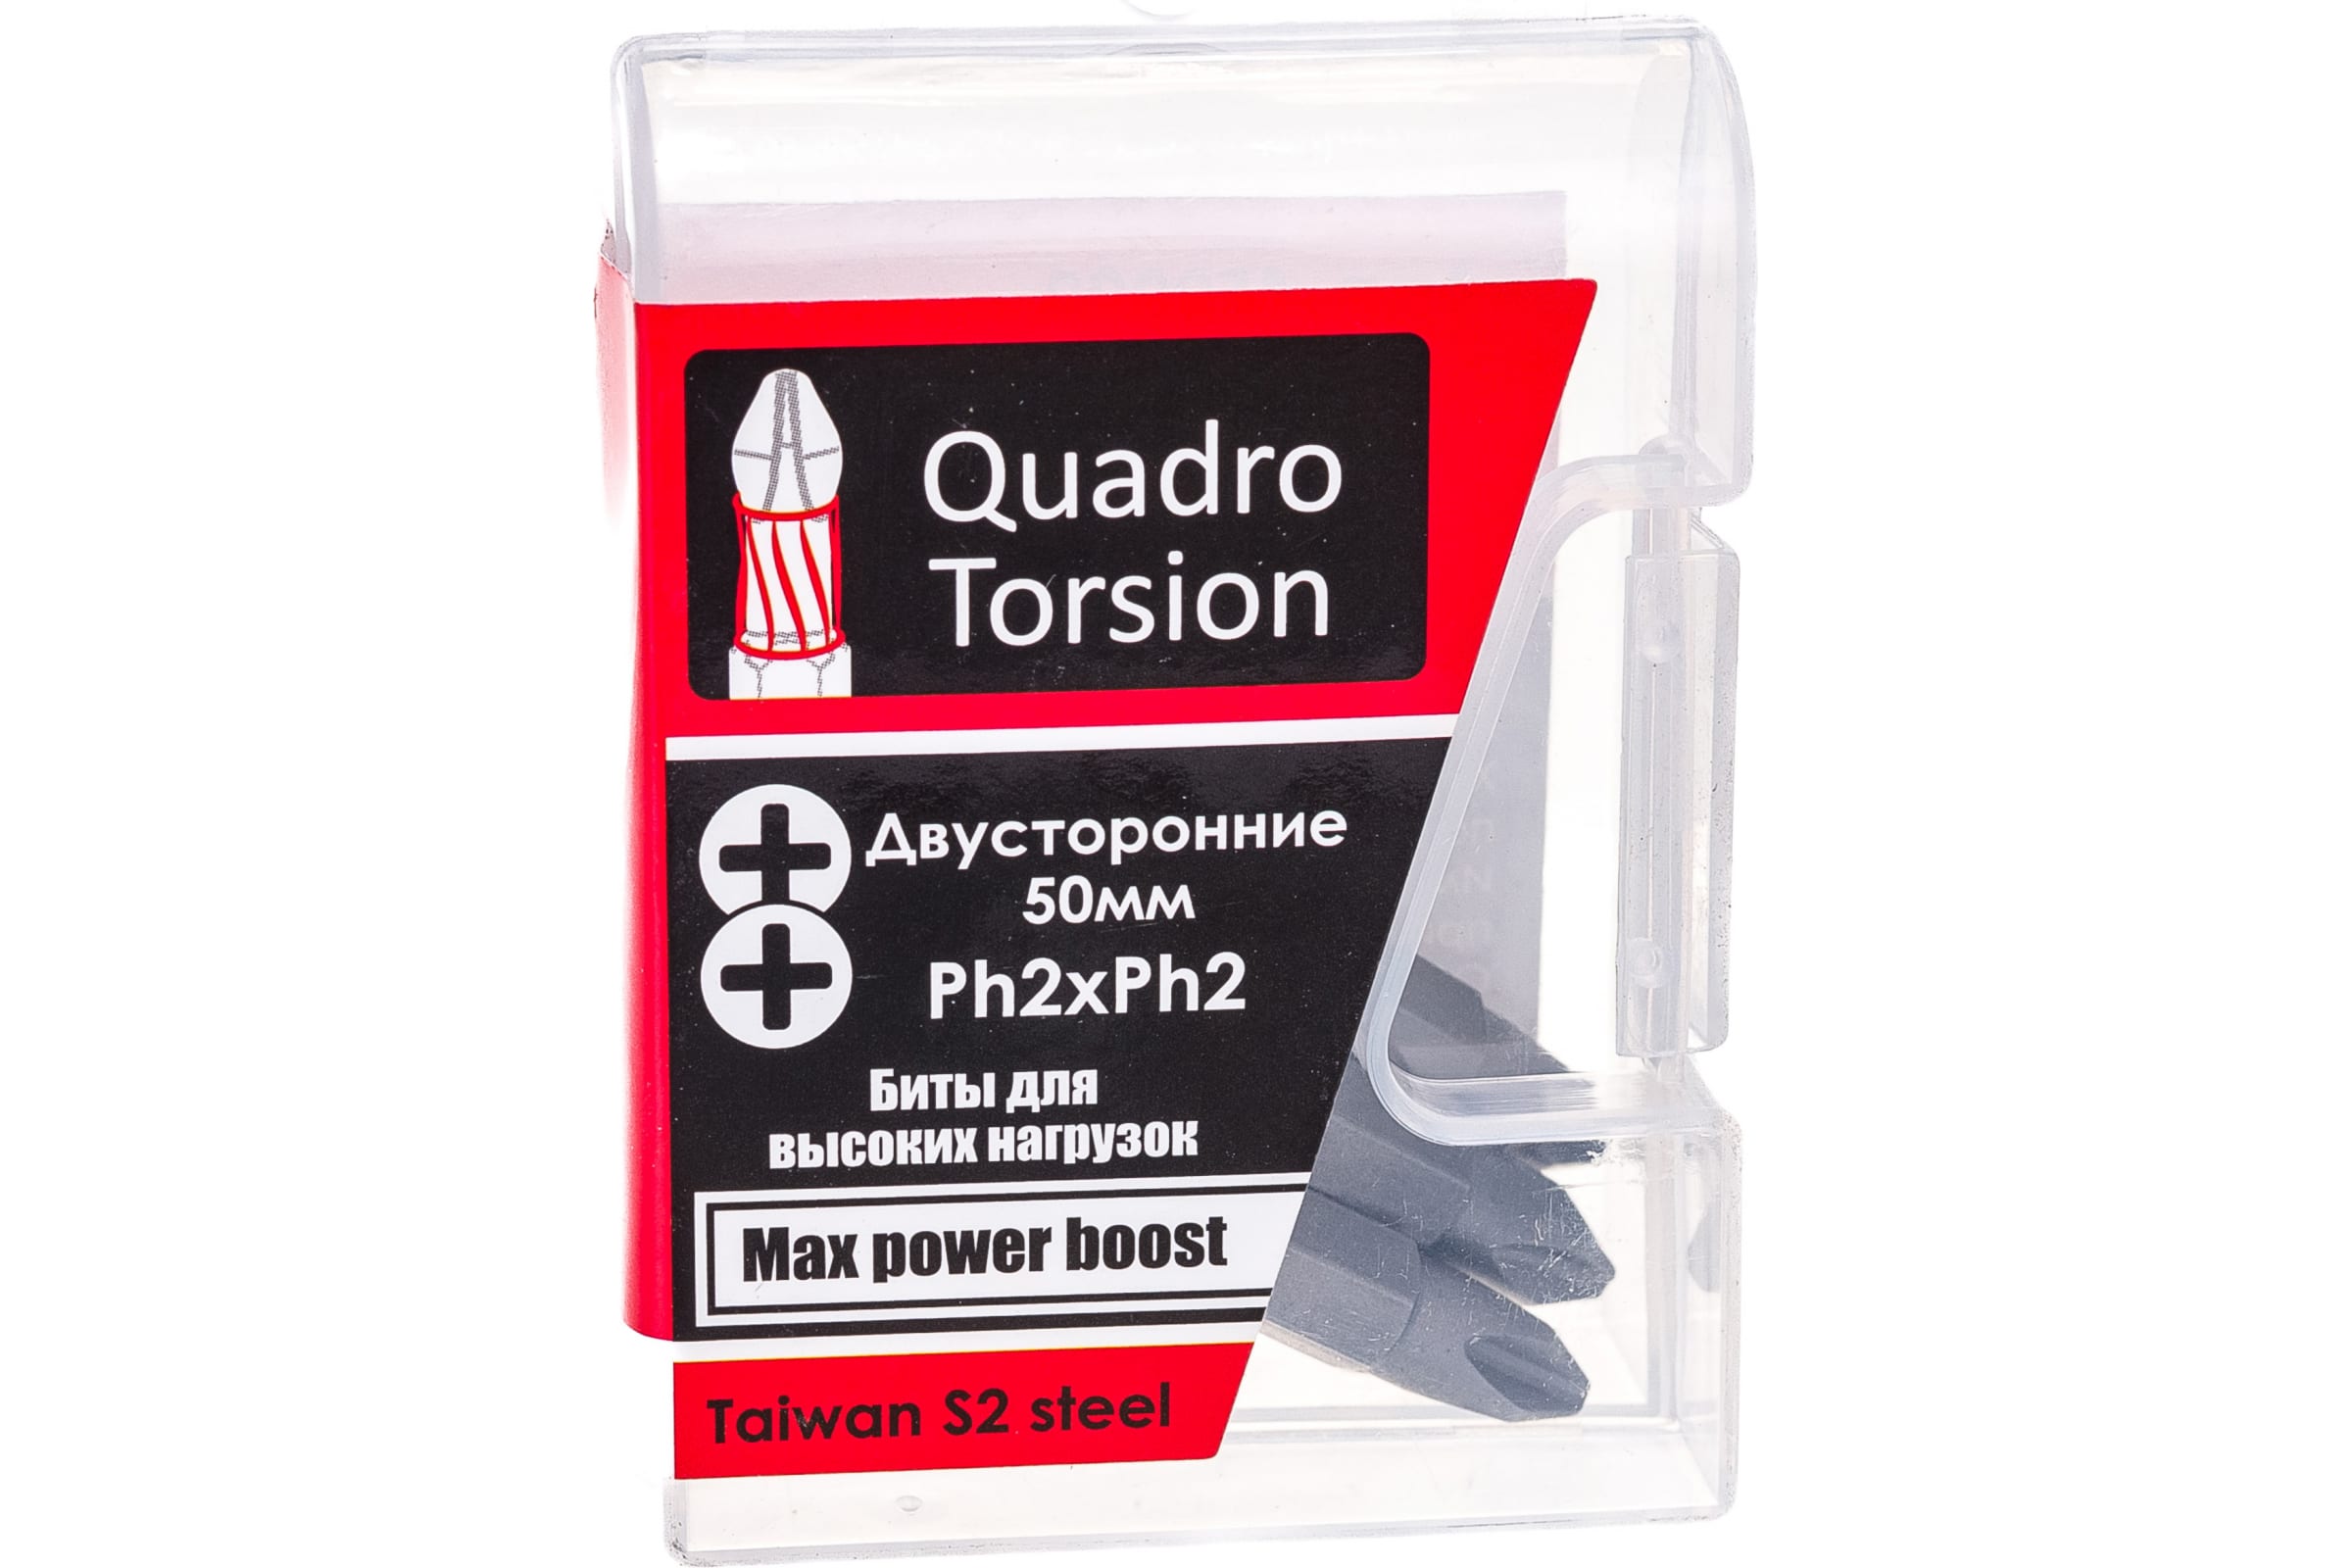 Quadro Torsion бита 1/4 двусторонняя Ph2xPh2 - 50мм 5шт./кор. 450022 двусторонняя бита redverg